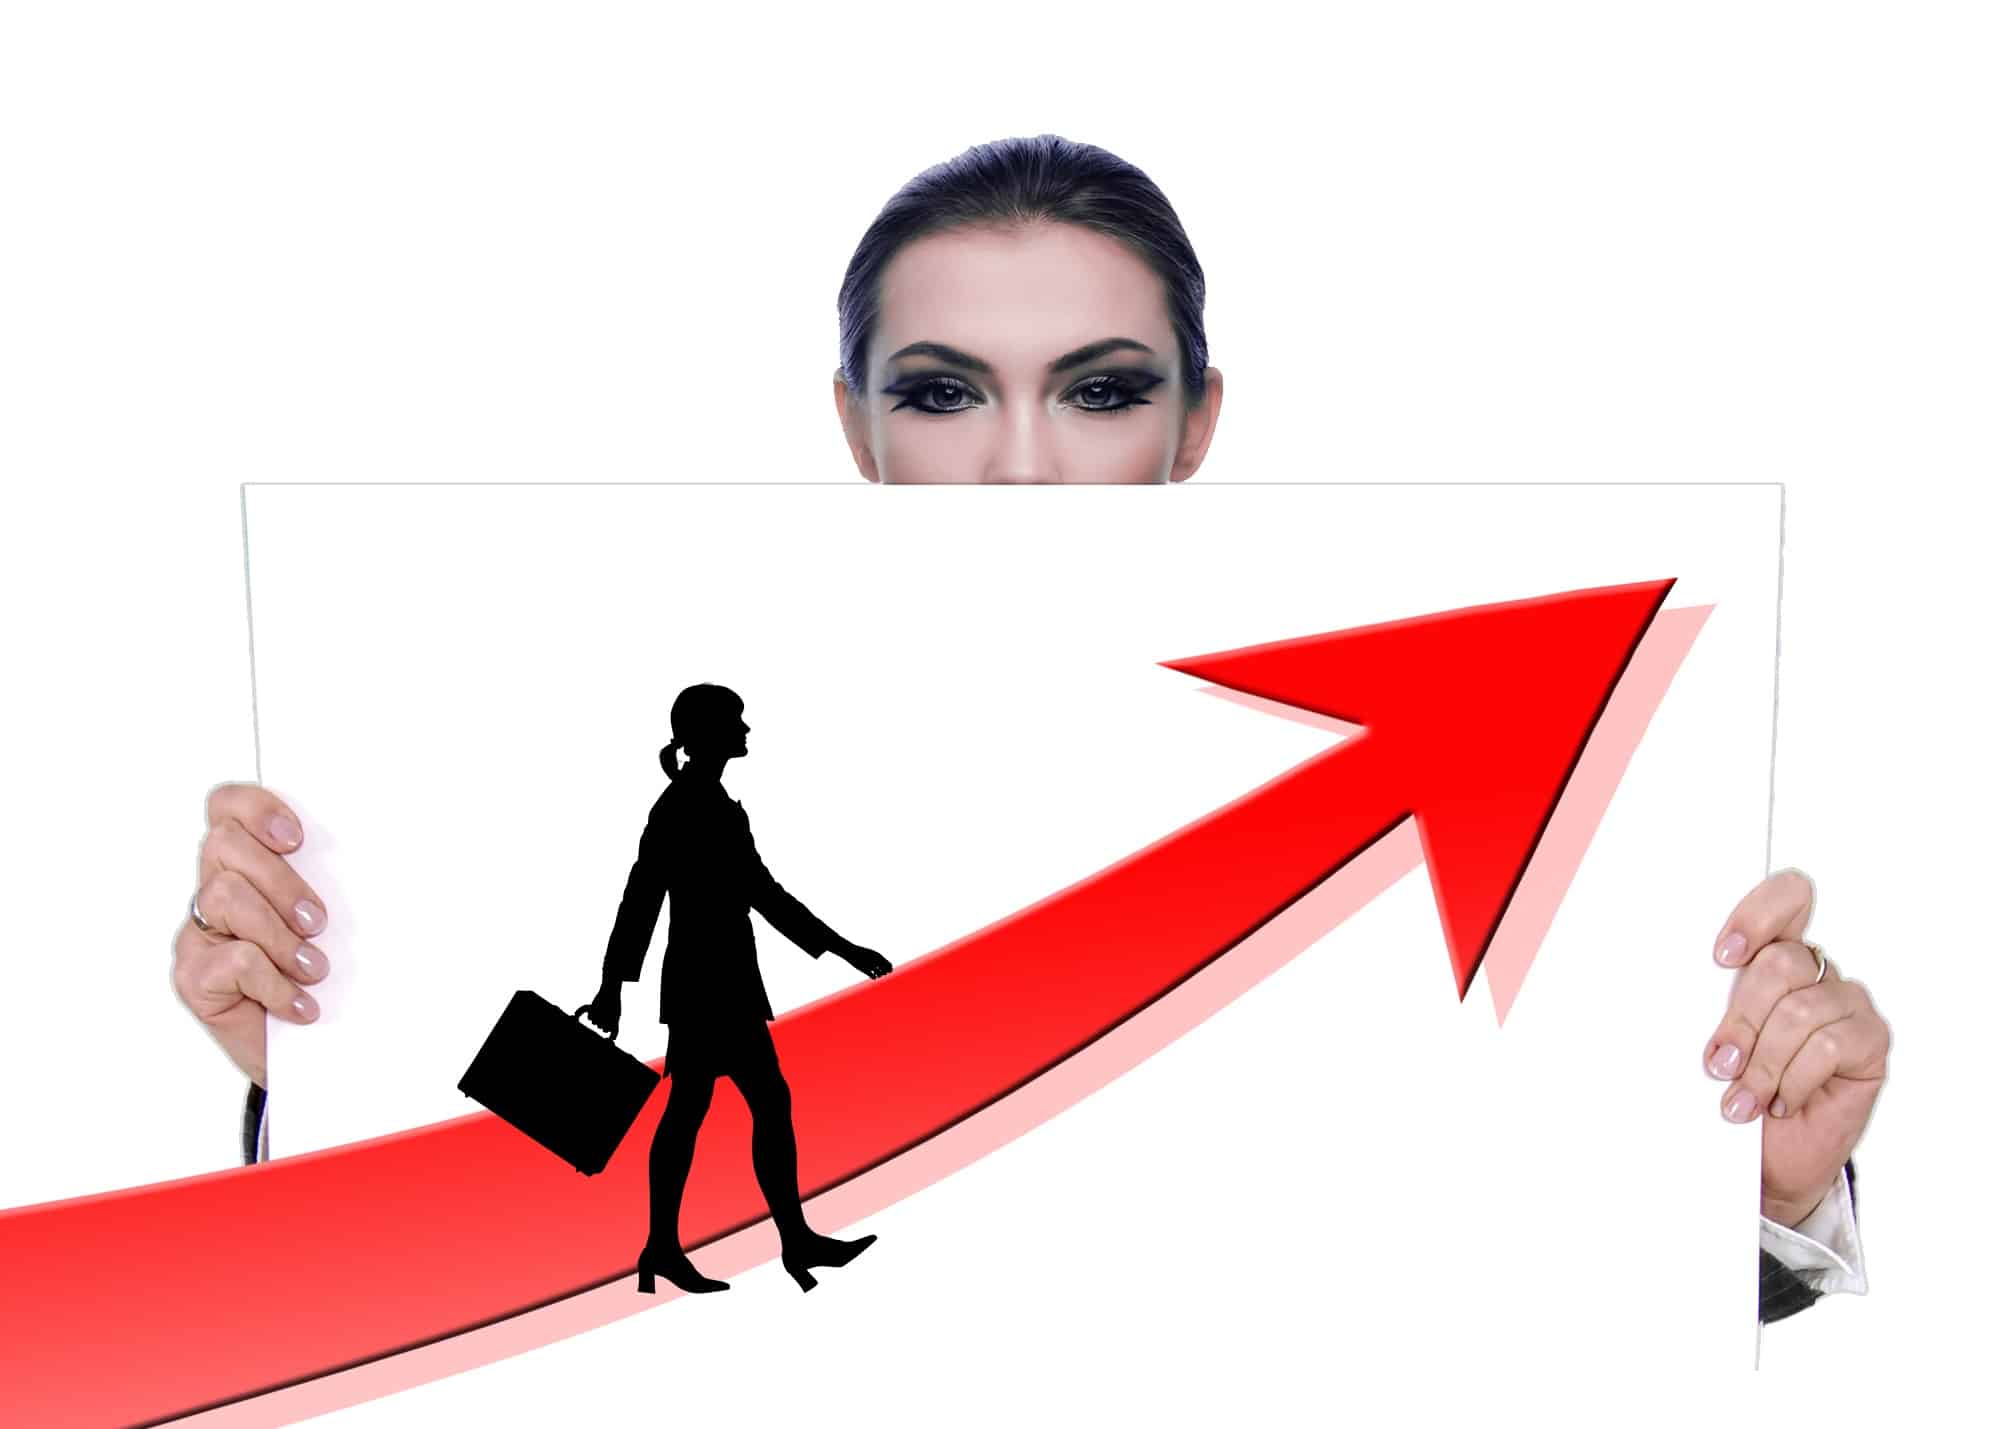 Frauen im Verkauf Erfolg weiblicher Einfluss Verkaufsphilosophie Ulrike Knauer Vertrieb Wirkung Mischung Kommunikation verkaufen Vorteile Frauenpower